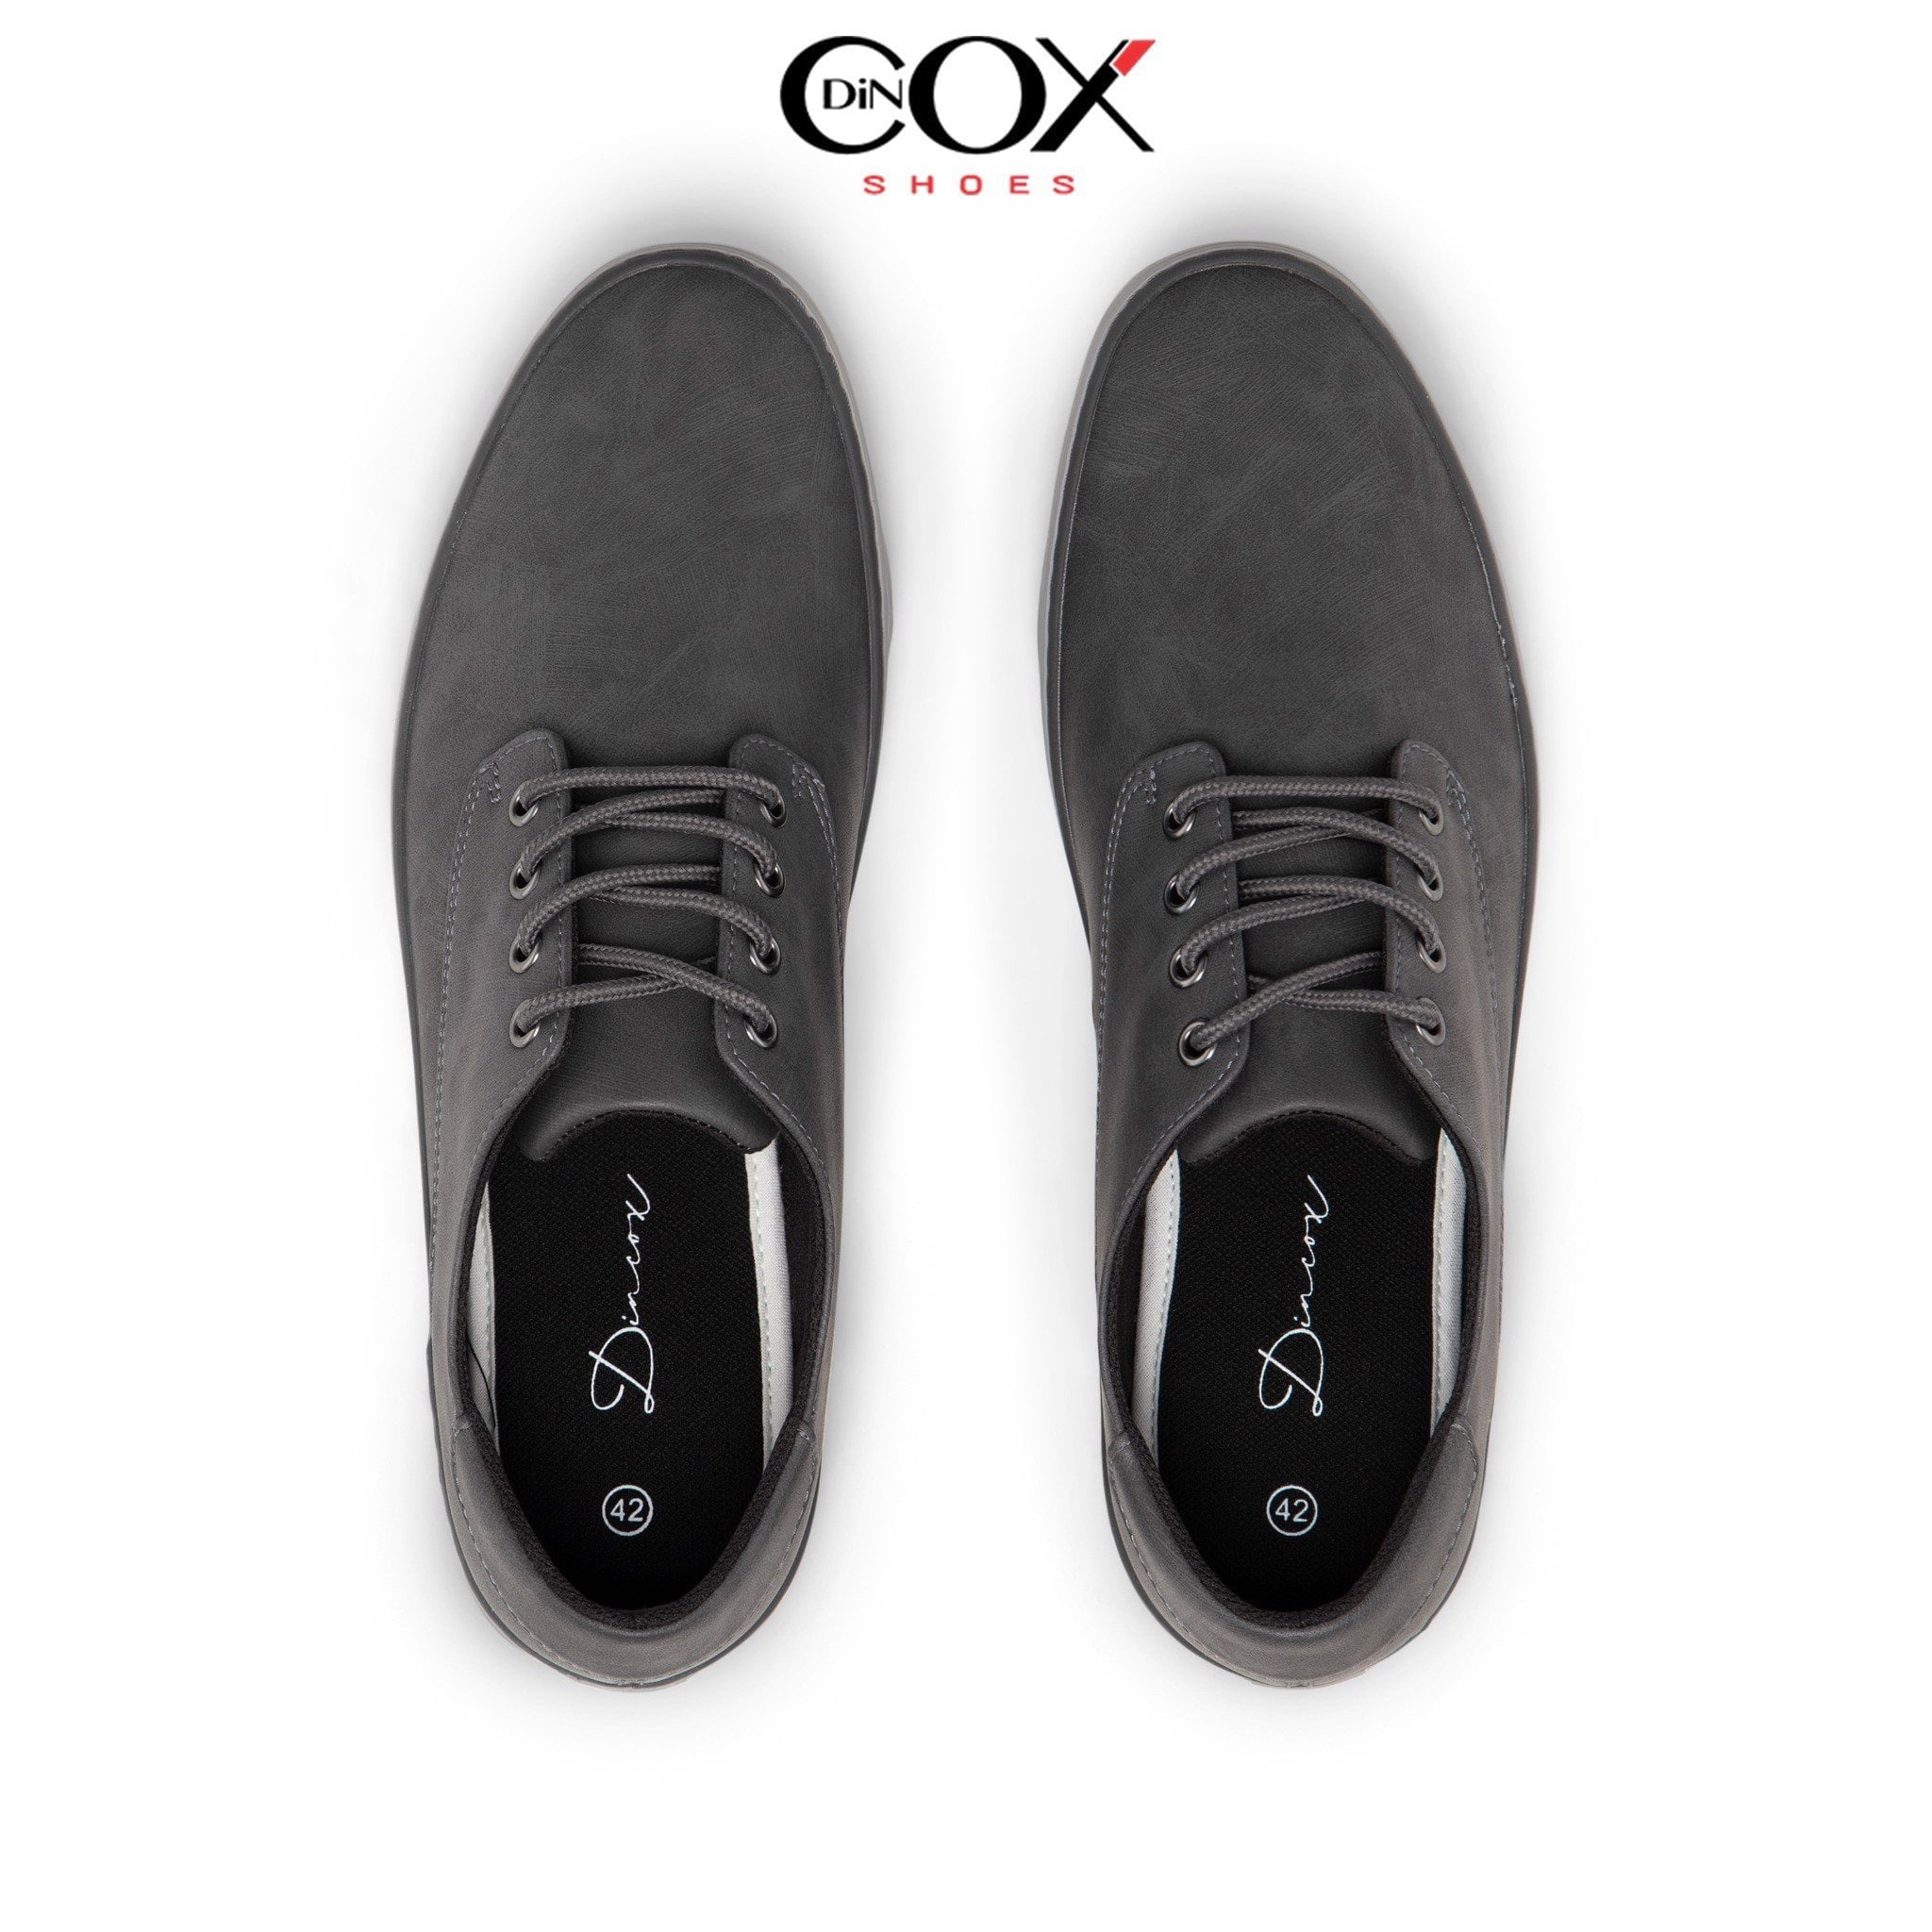 DinCox Shoes